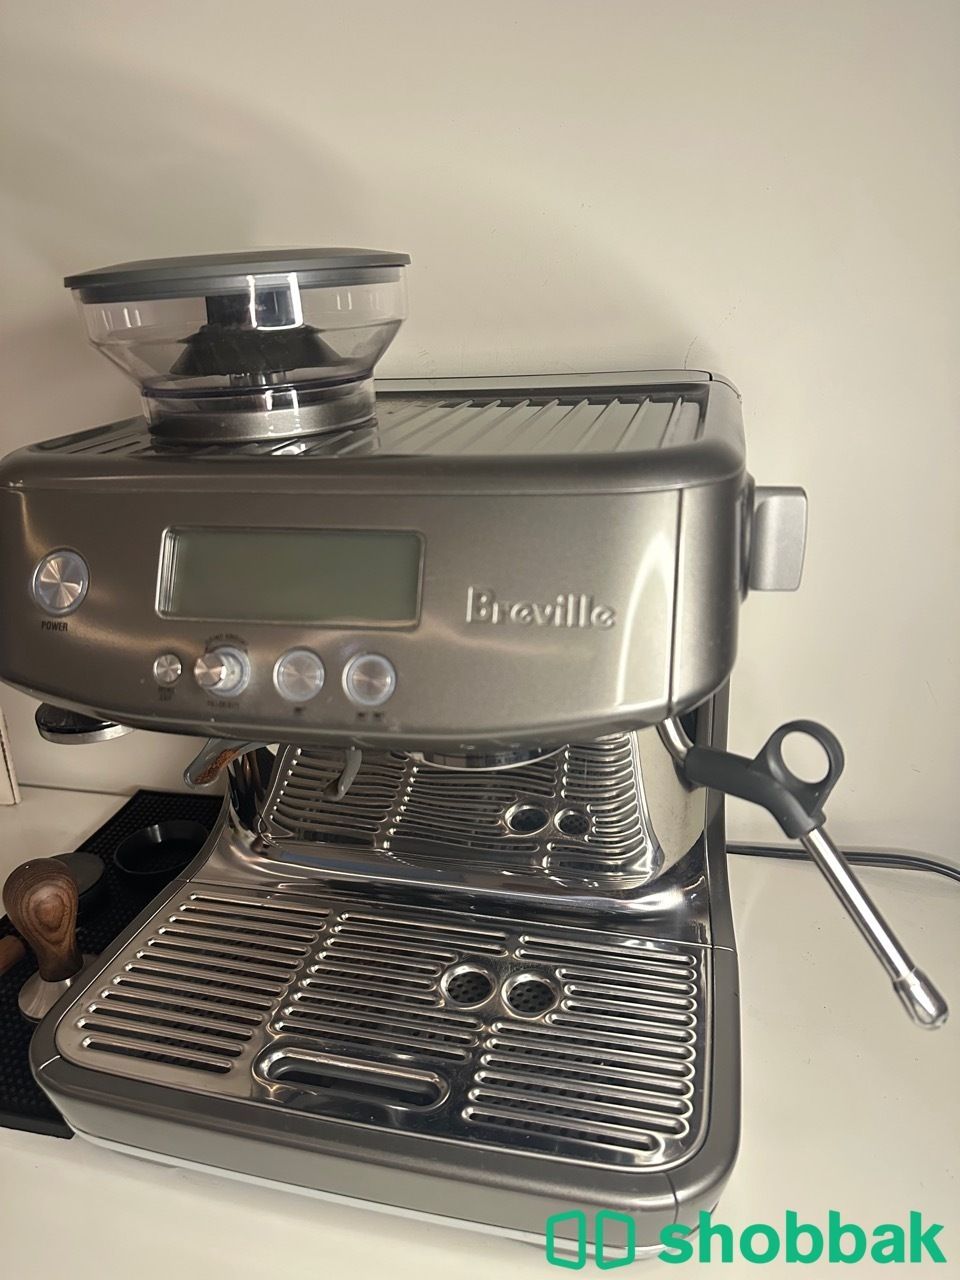 الة قهوة بريفيل برو استعمال خفيف  Breville pro Shobbak Saudi Arabia